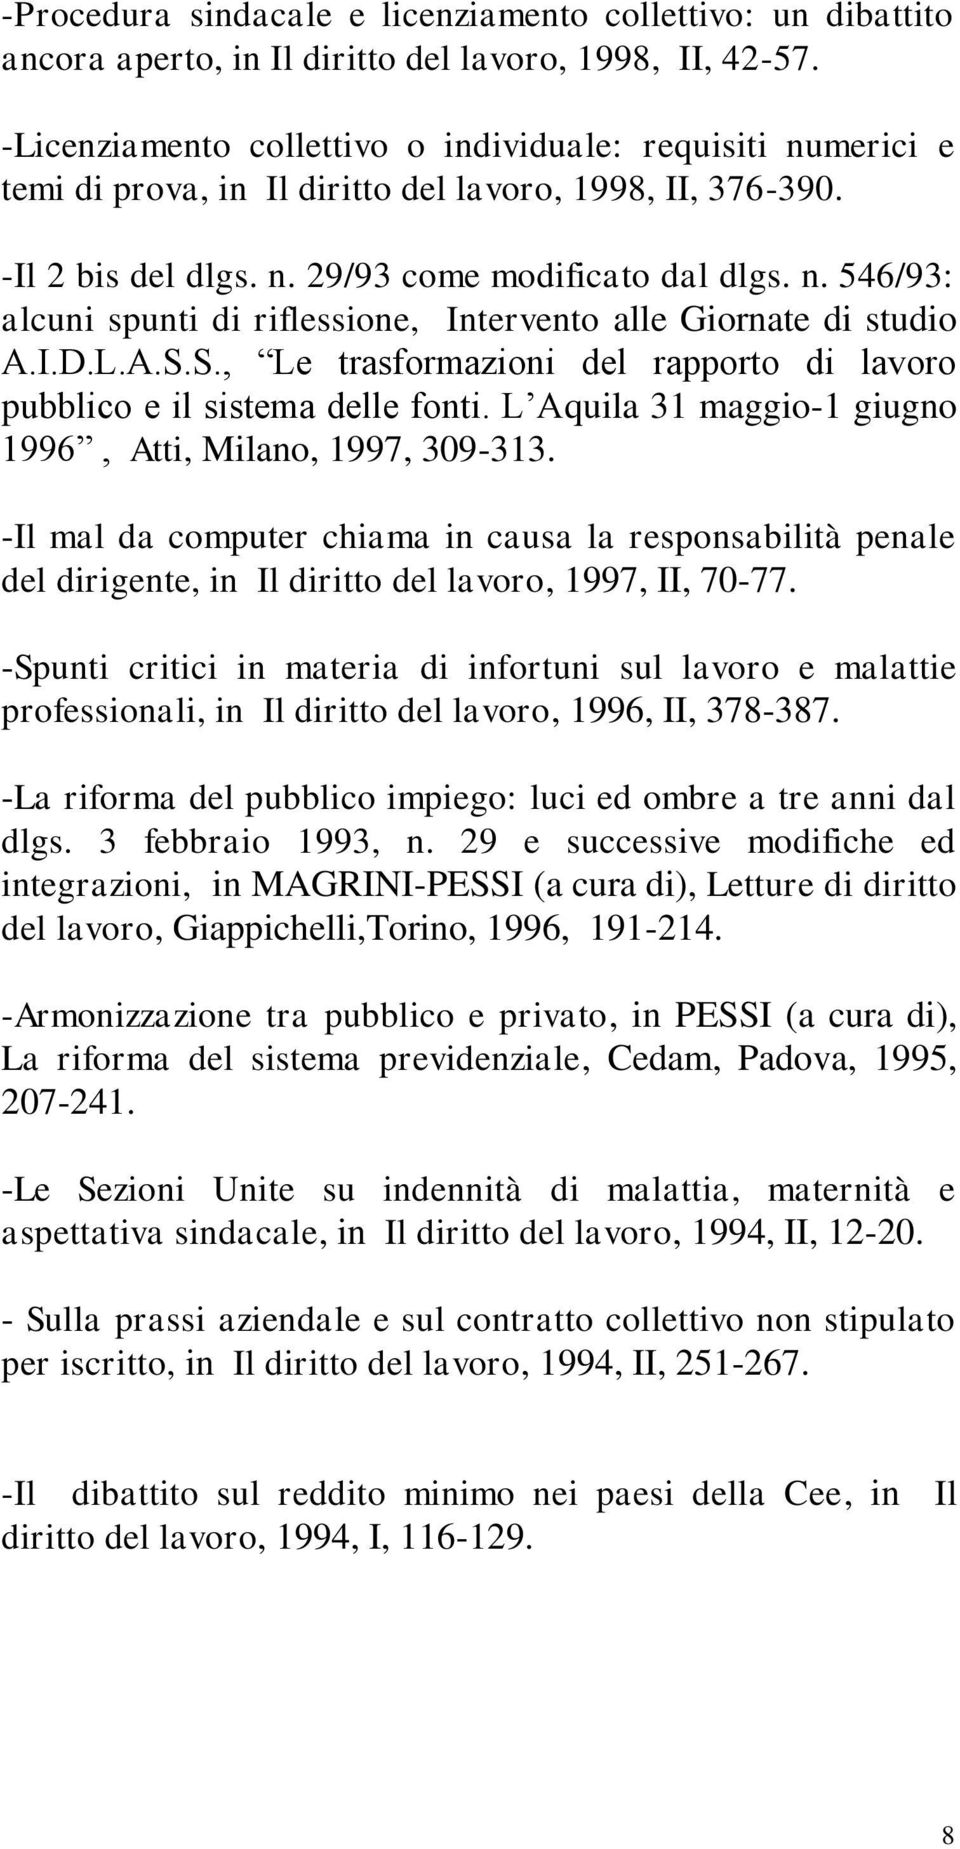 I.D.L.A.S.S., Le trasformazioni del rapporto di lavoro pubblico e il sistema delle fonti. L Aquila 31 maggio-1 giugno 1996, Atti, Milano, 1997, 309-313.